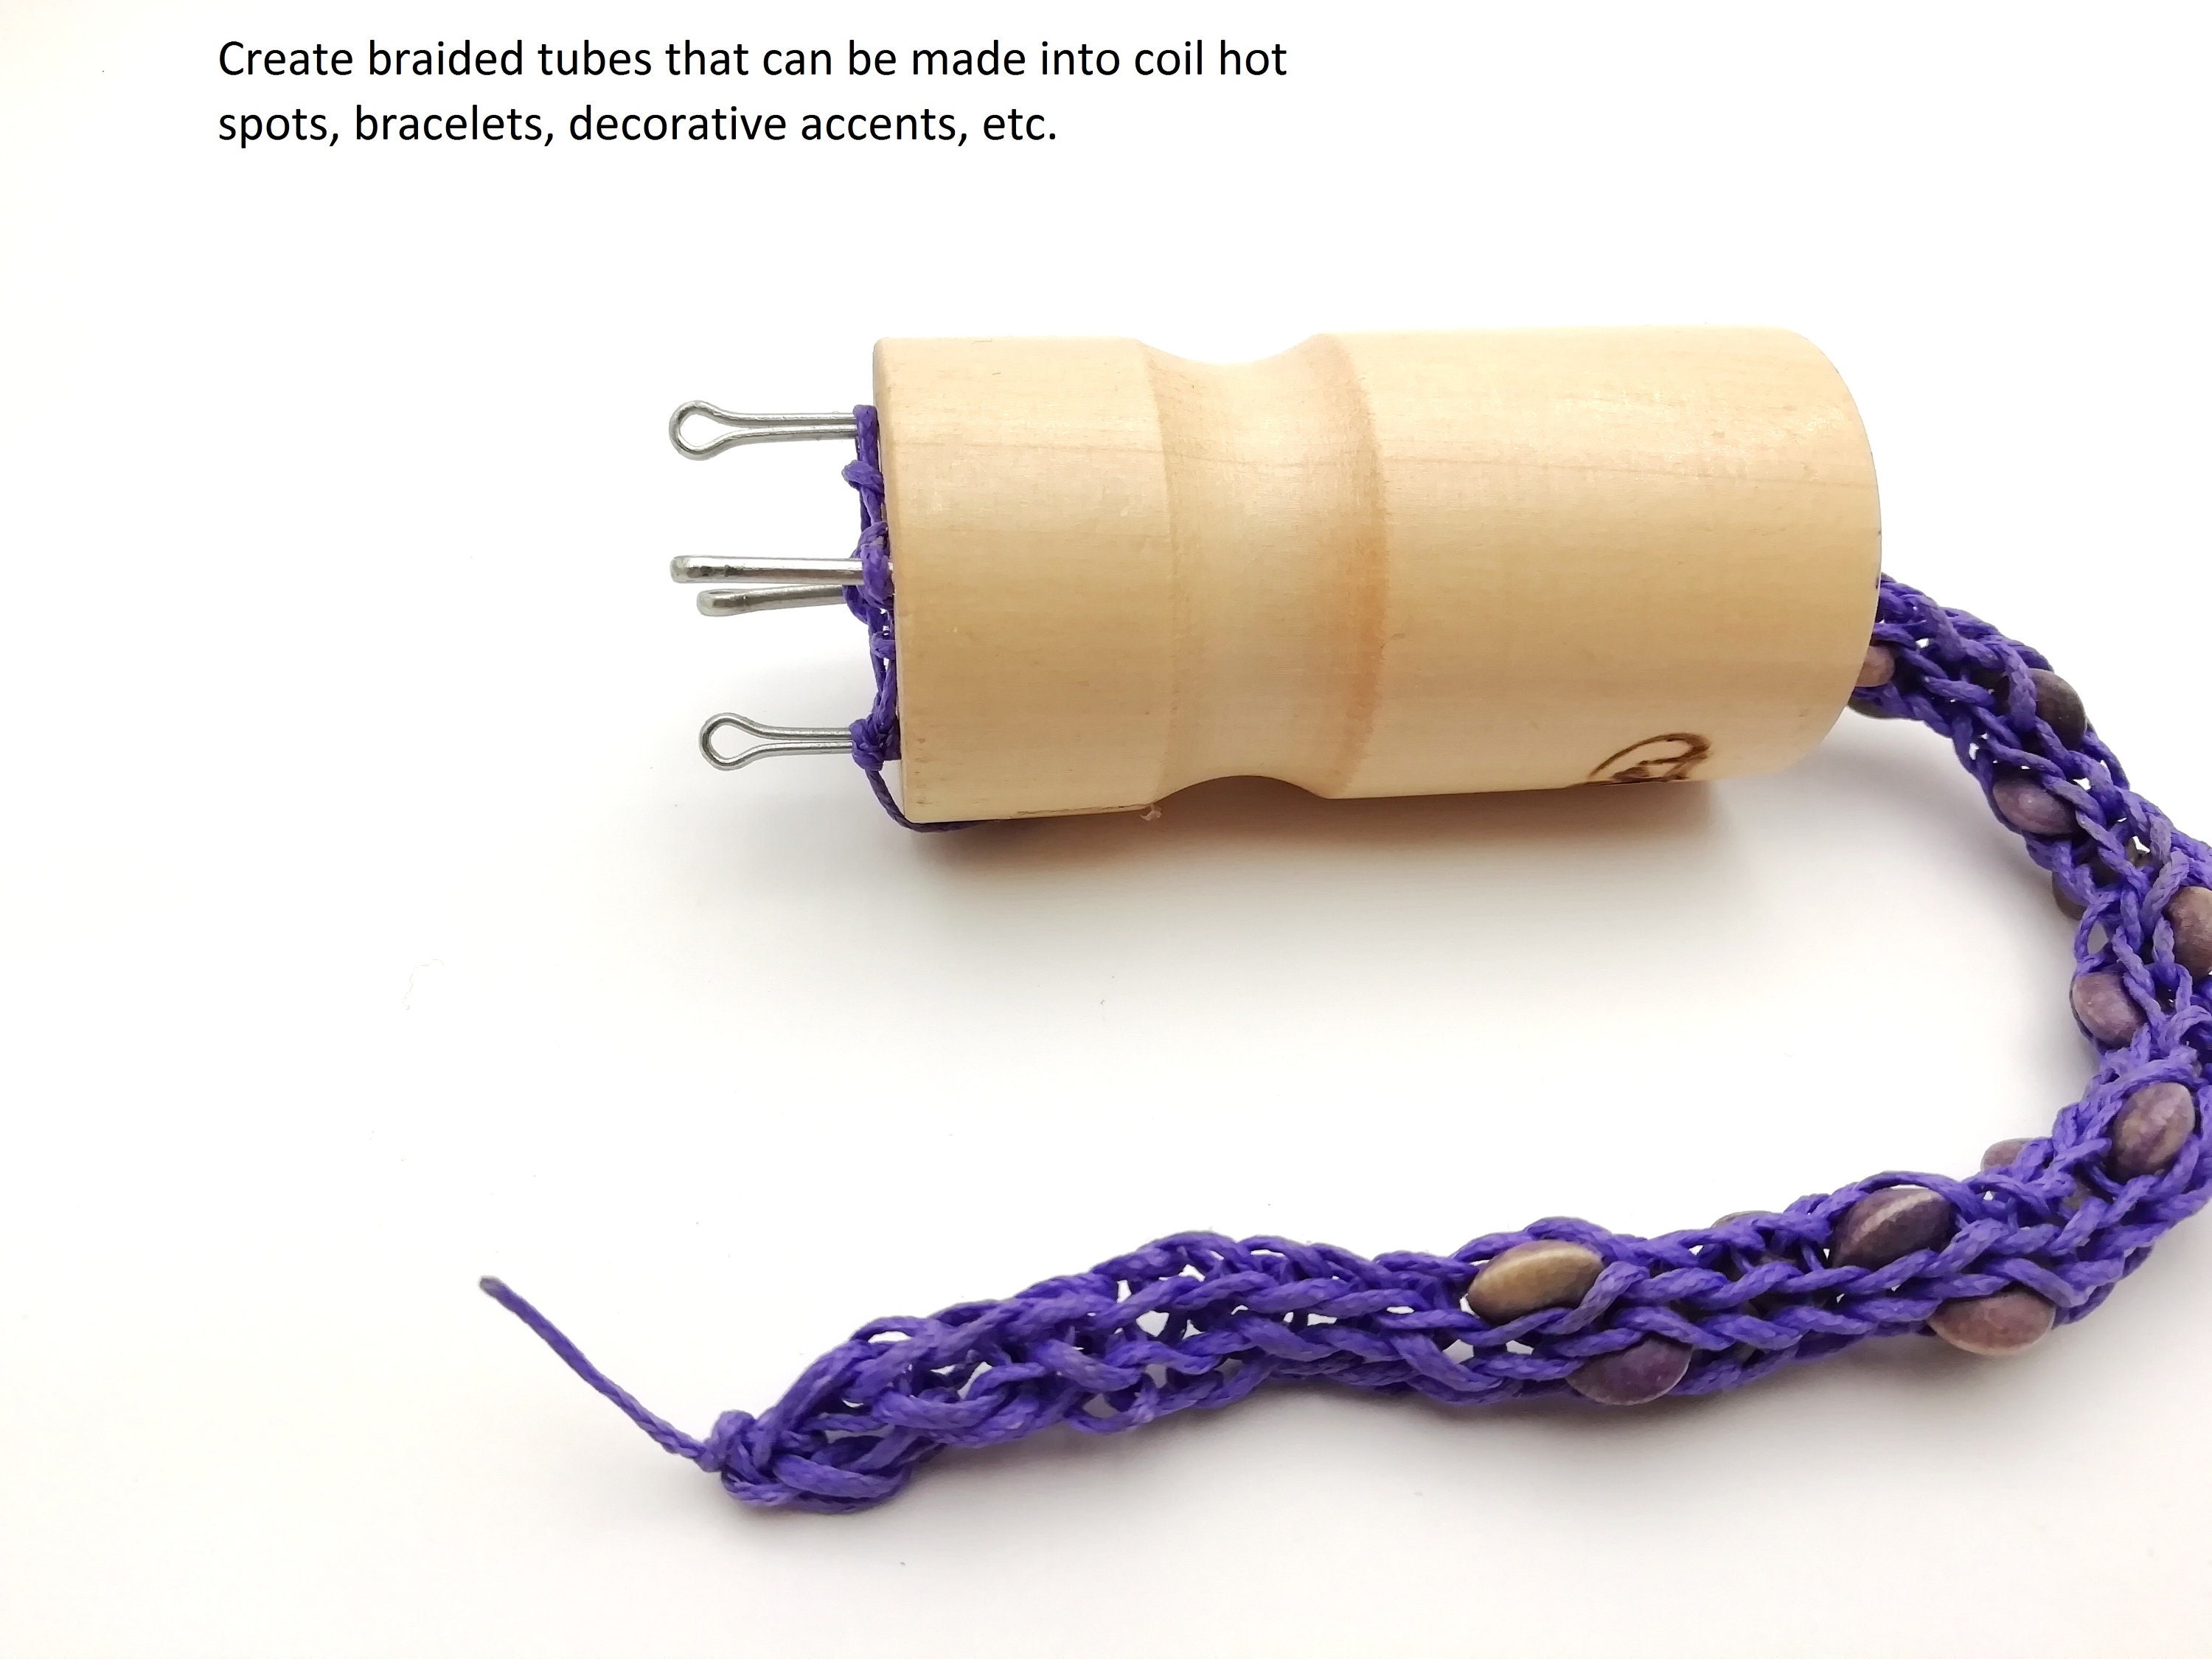 French Knitter Tool 2 Pack, Wooden Knitting Set Spool Knitting Doll  Knitting Loom Toy for Making Bracelets, Etc